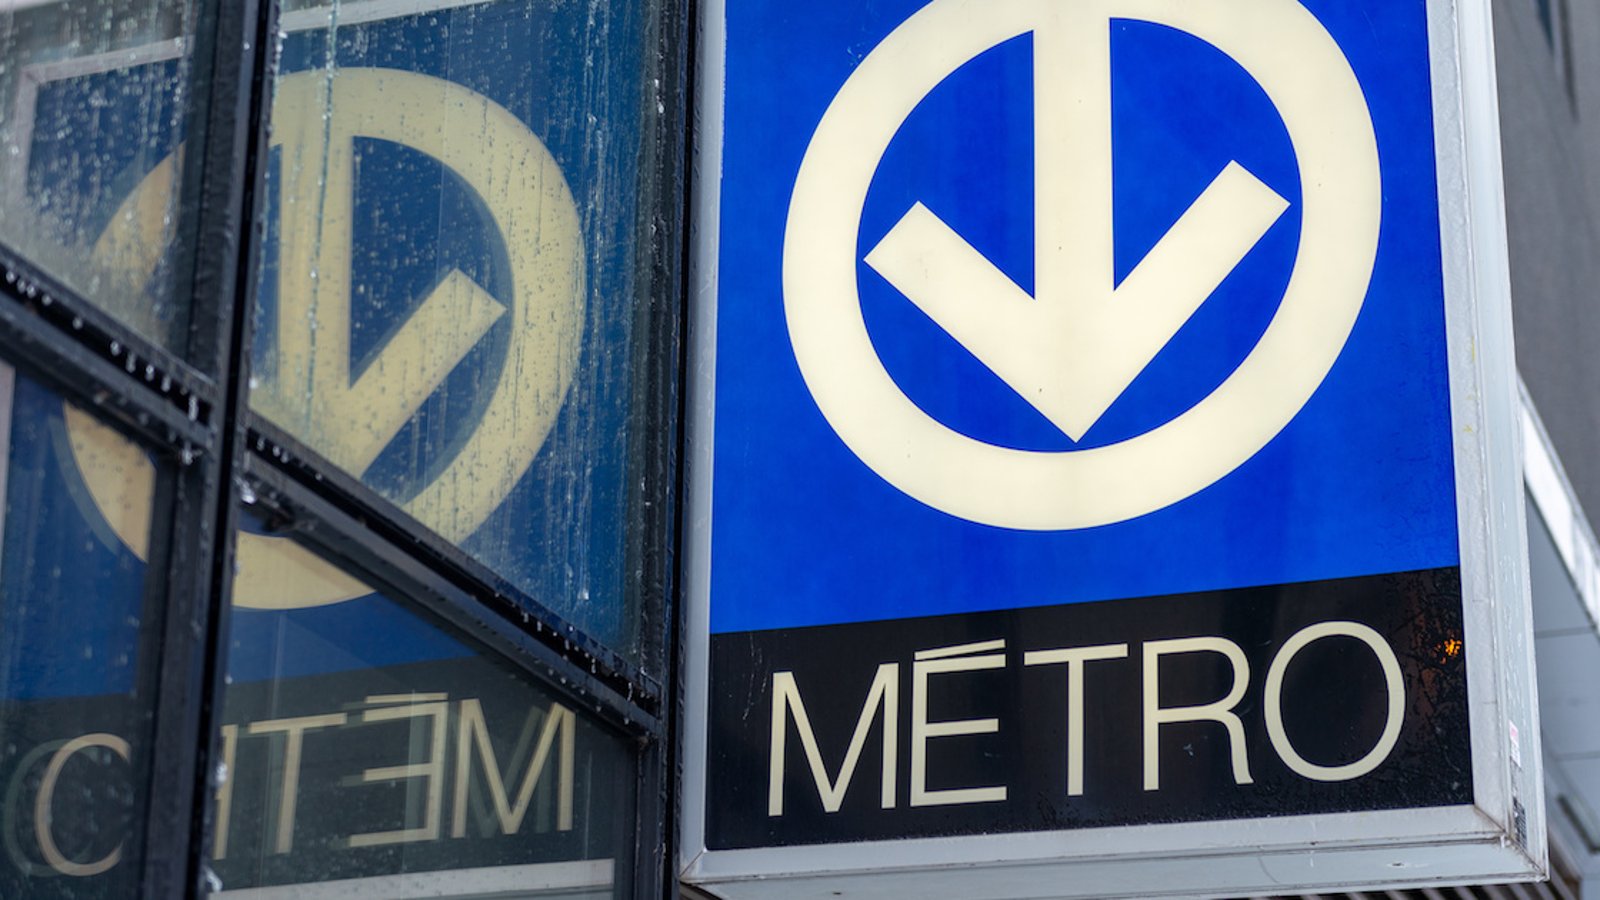 Le métro sera gratuit les fins de semaines dans 7 stations montréalaises